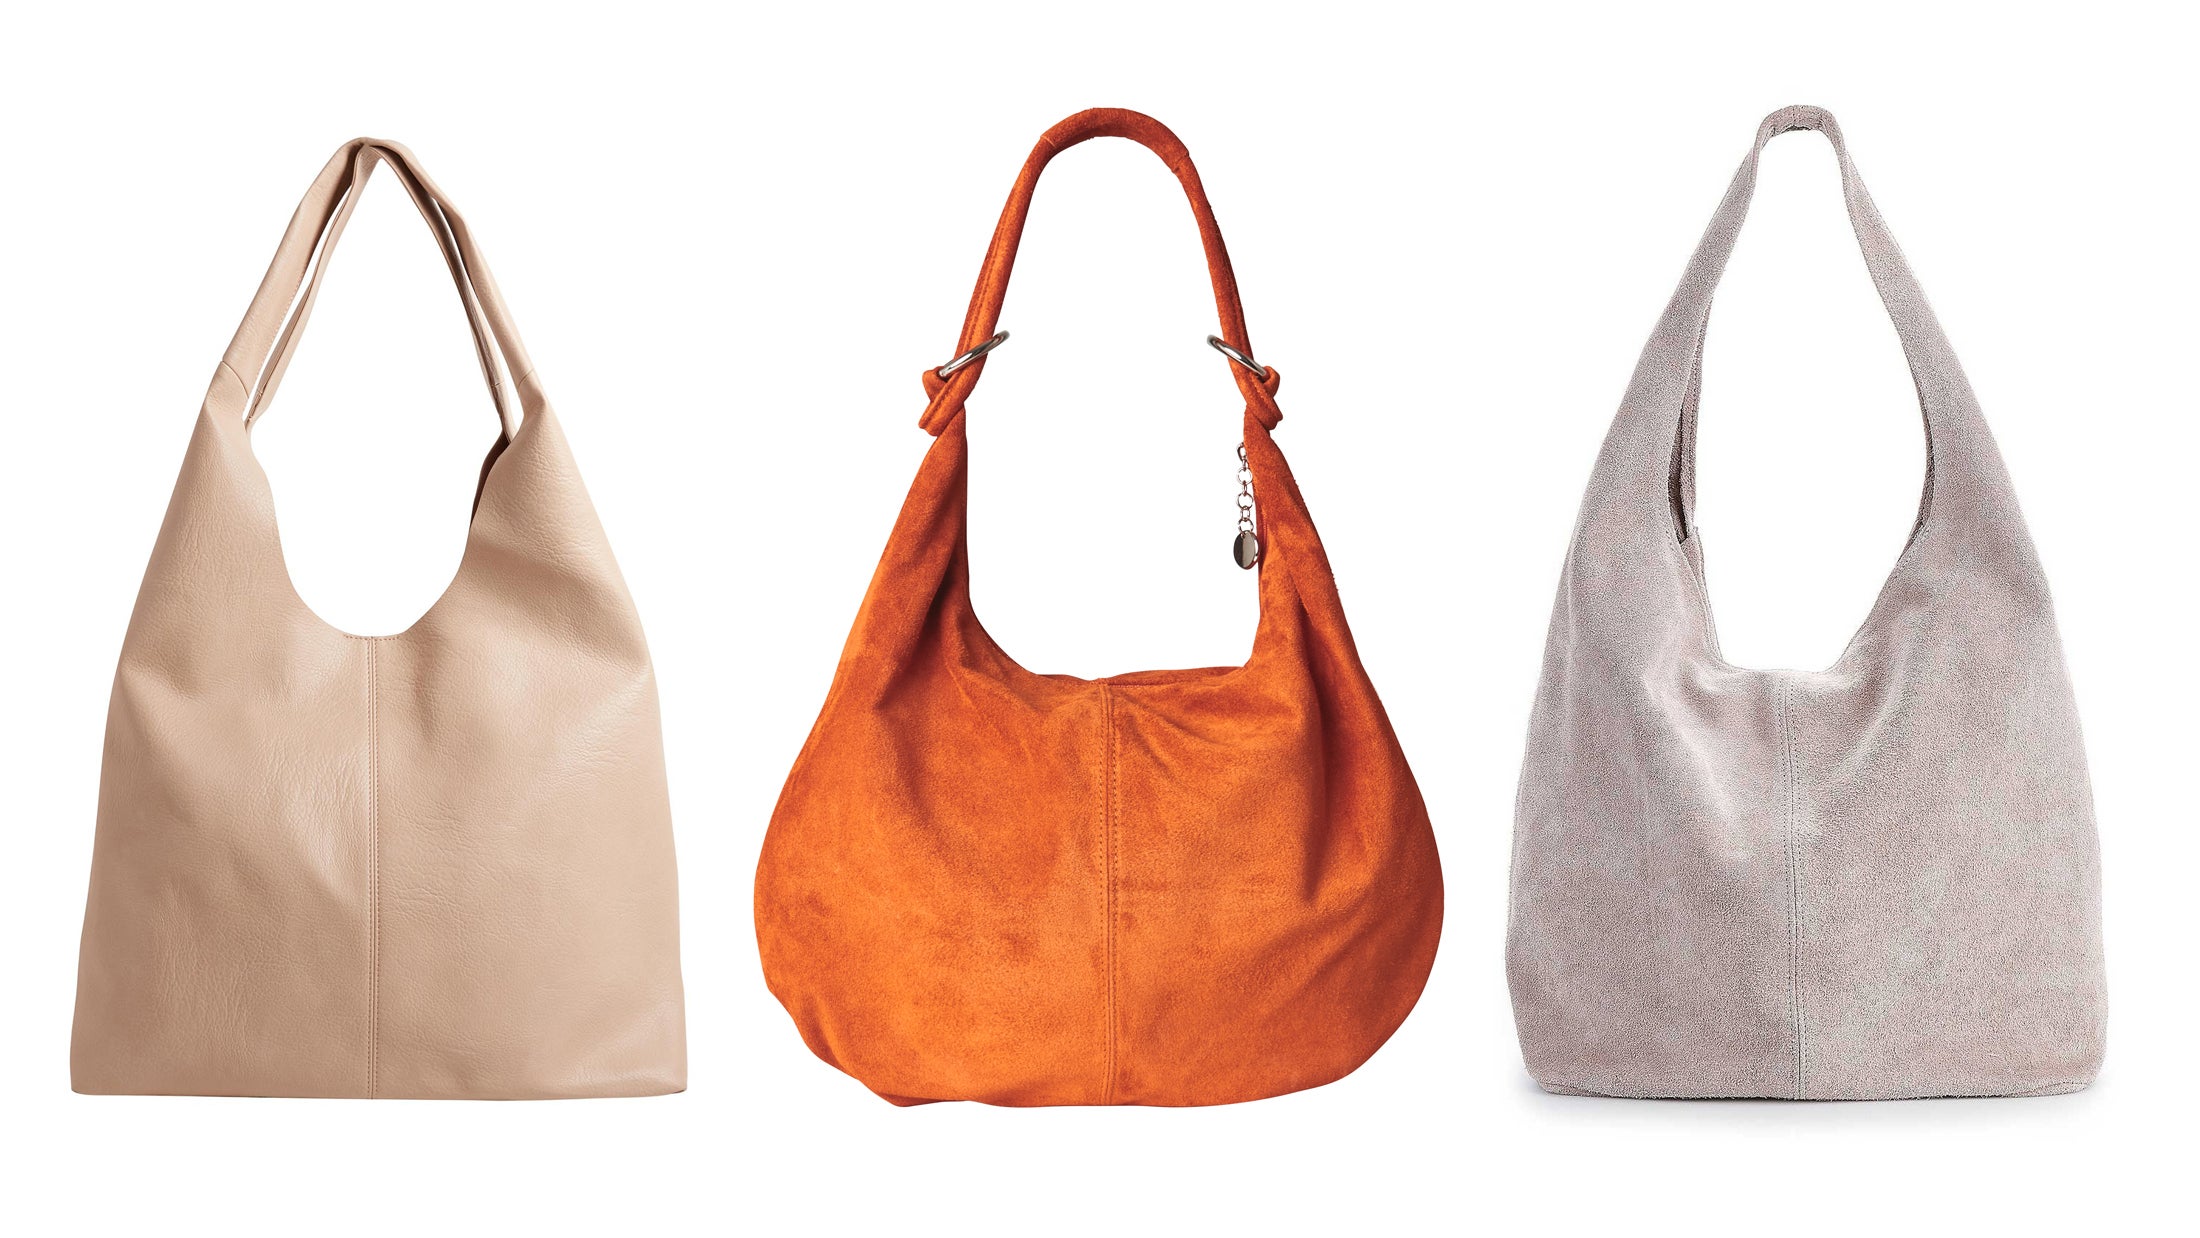 Designer Hobo Style Handbags Sale - www.edoc.com.vn 1694334517